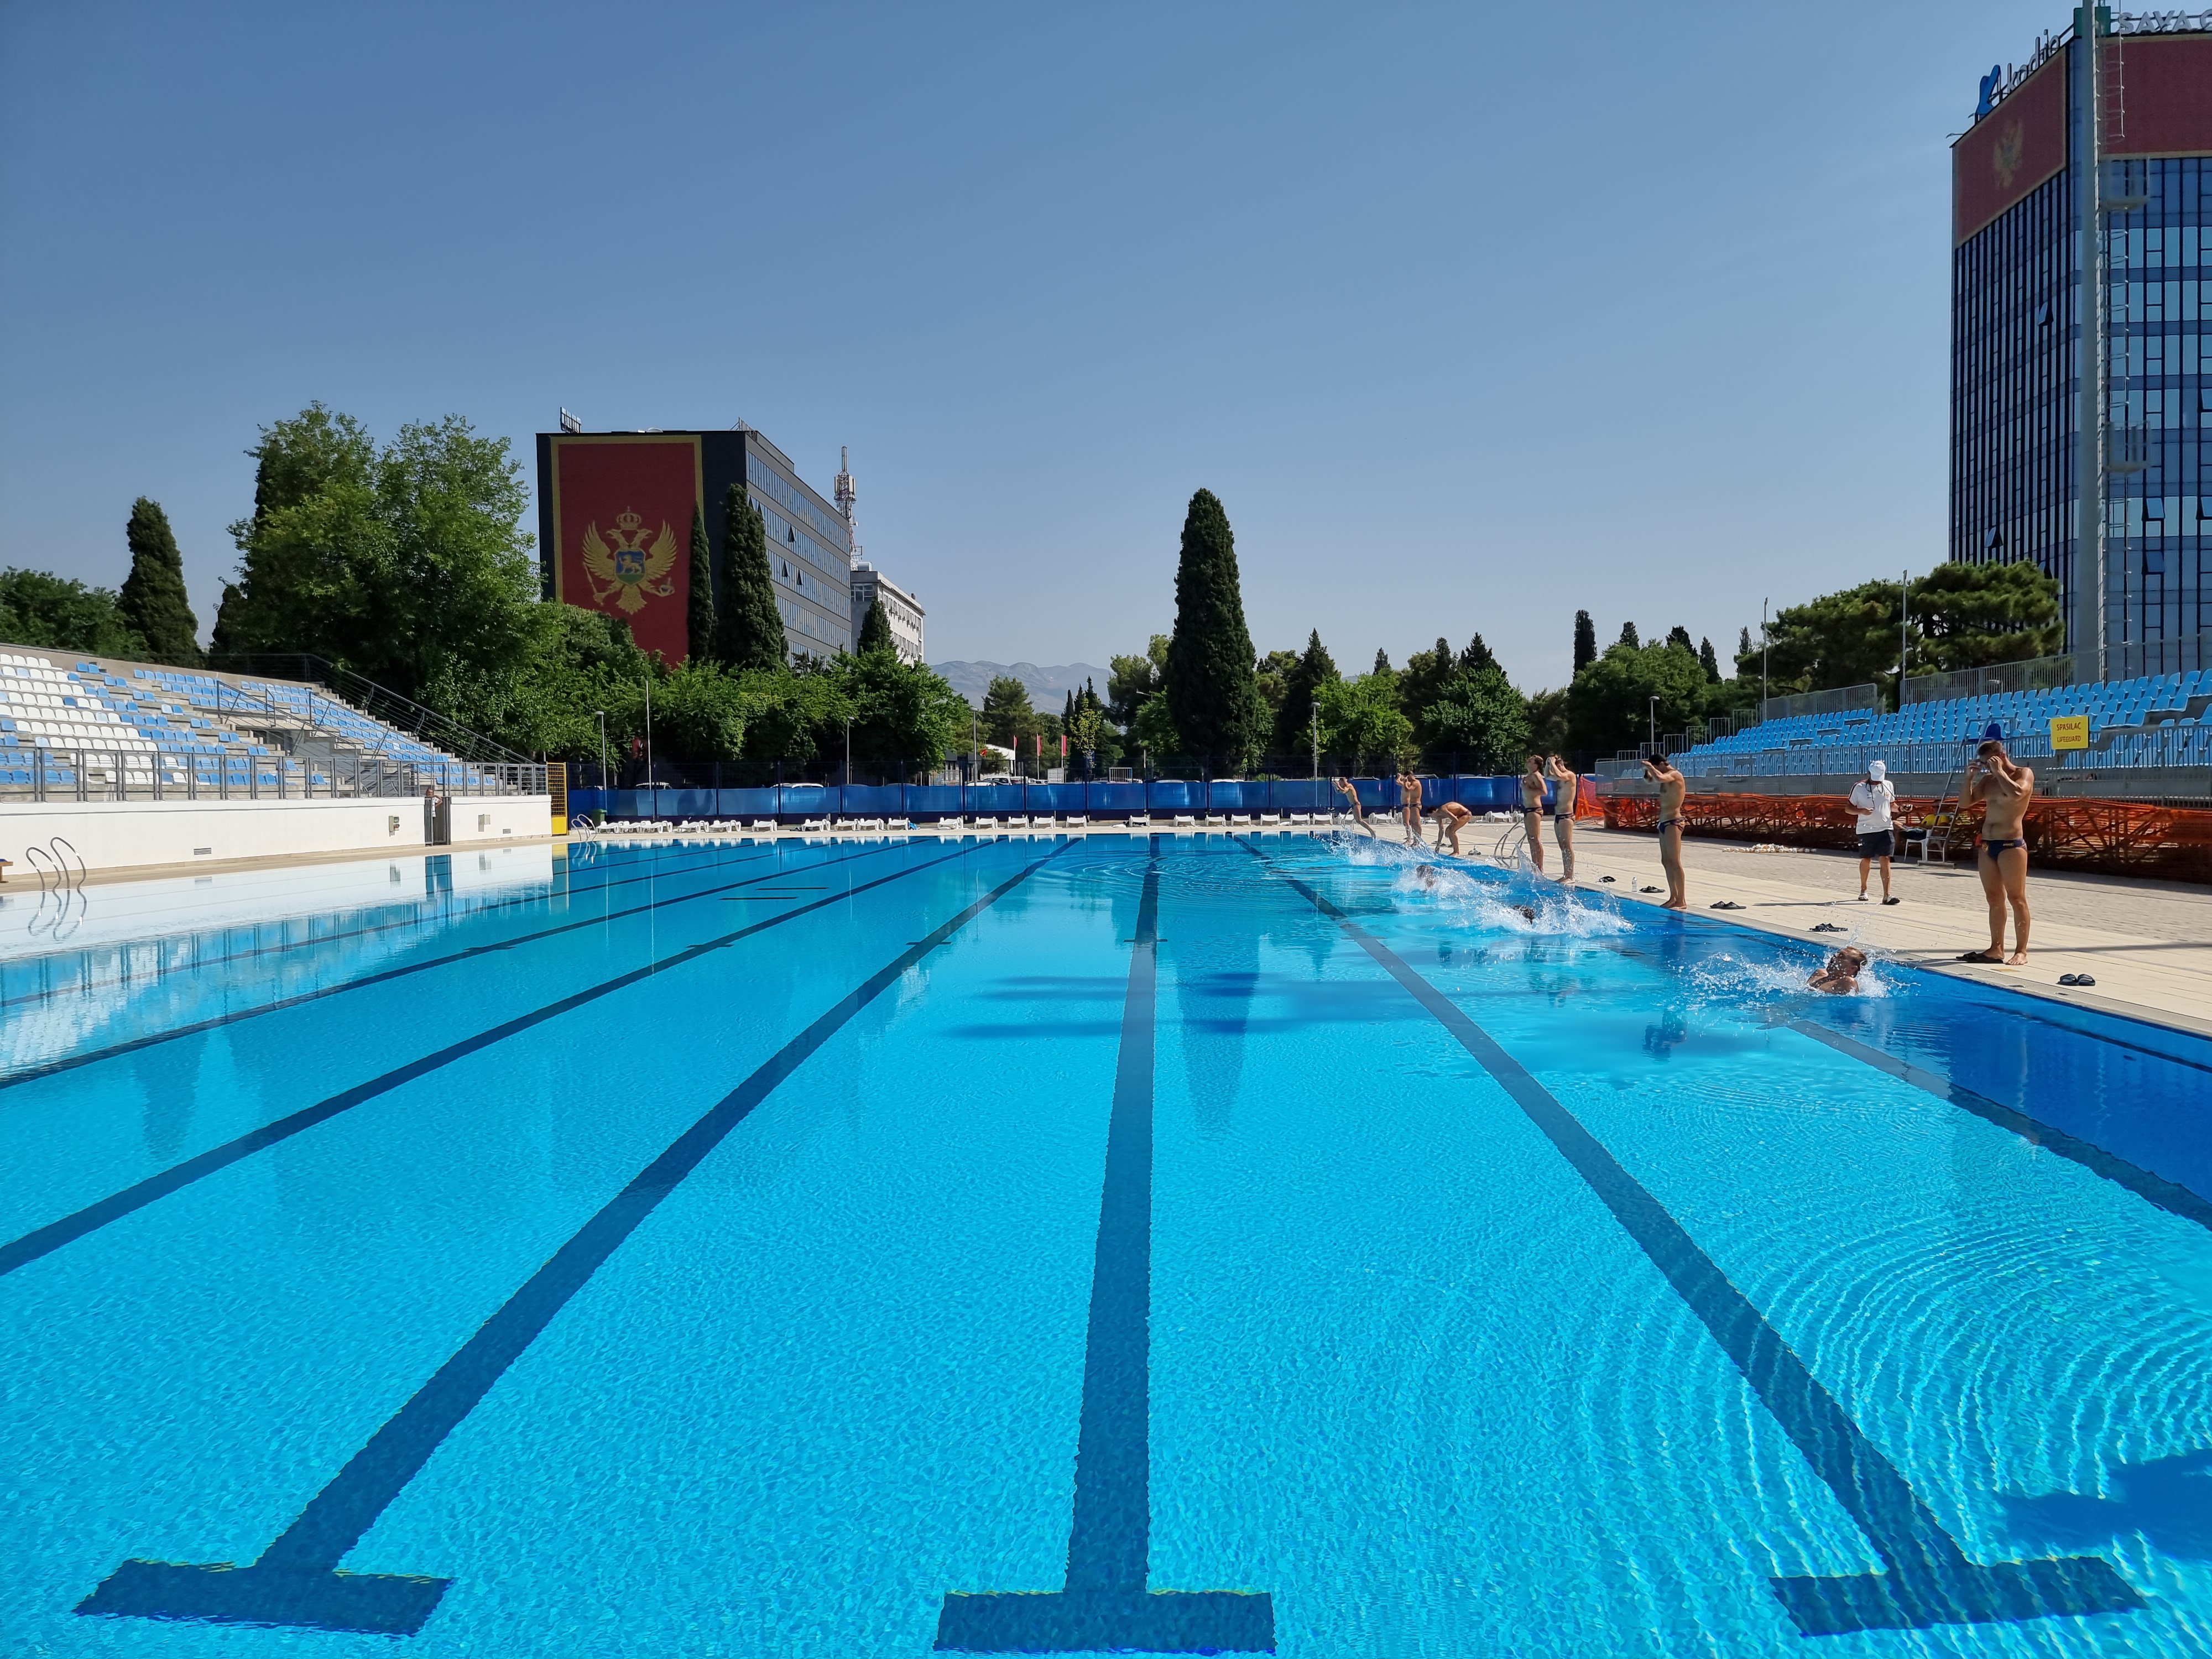 Olimpijski bazen u sklopu SC "Morača" sljedeće sedmice počinje sa radom; Očekuje nas odlična sezona